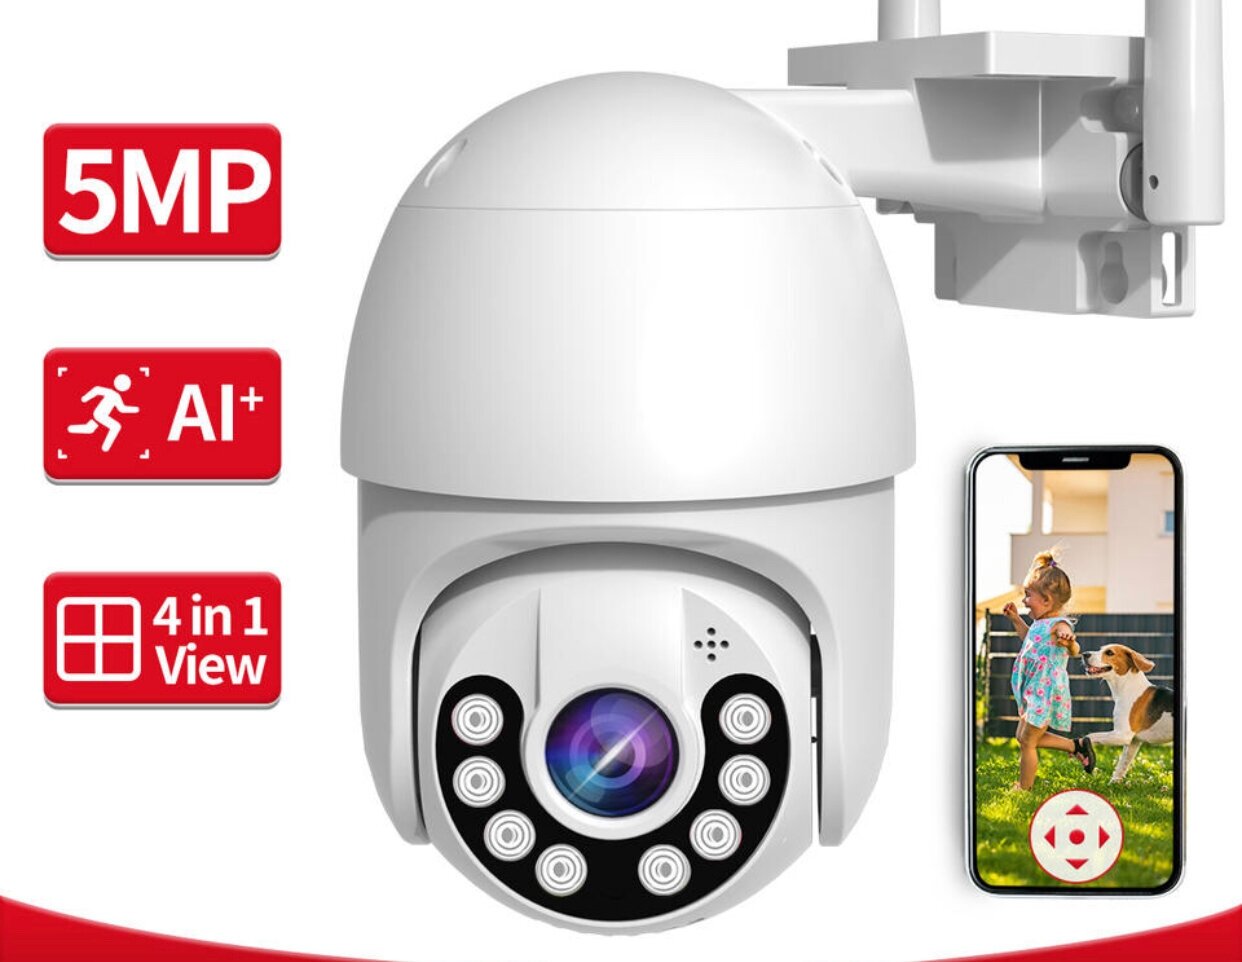 Камера видеонаблюдения 5 мп/ белая/ip/Wi-Fi/поворотная камера/Уличная/домашняя